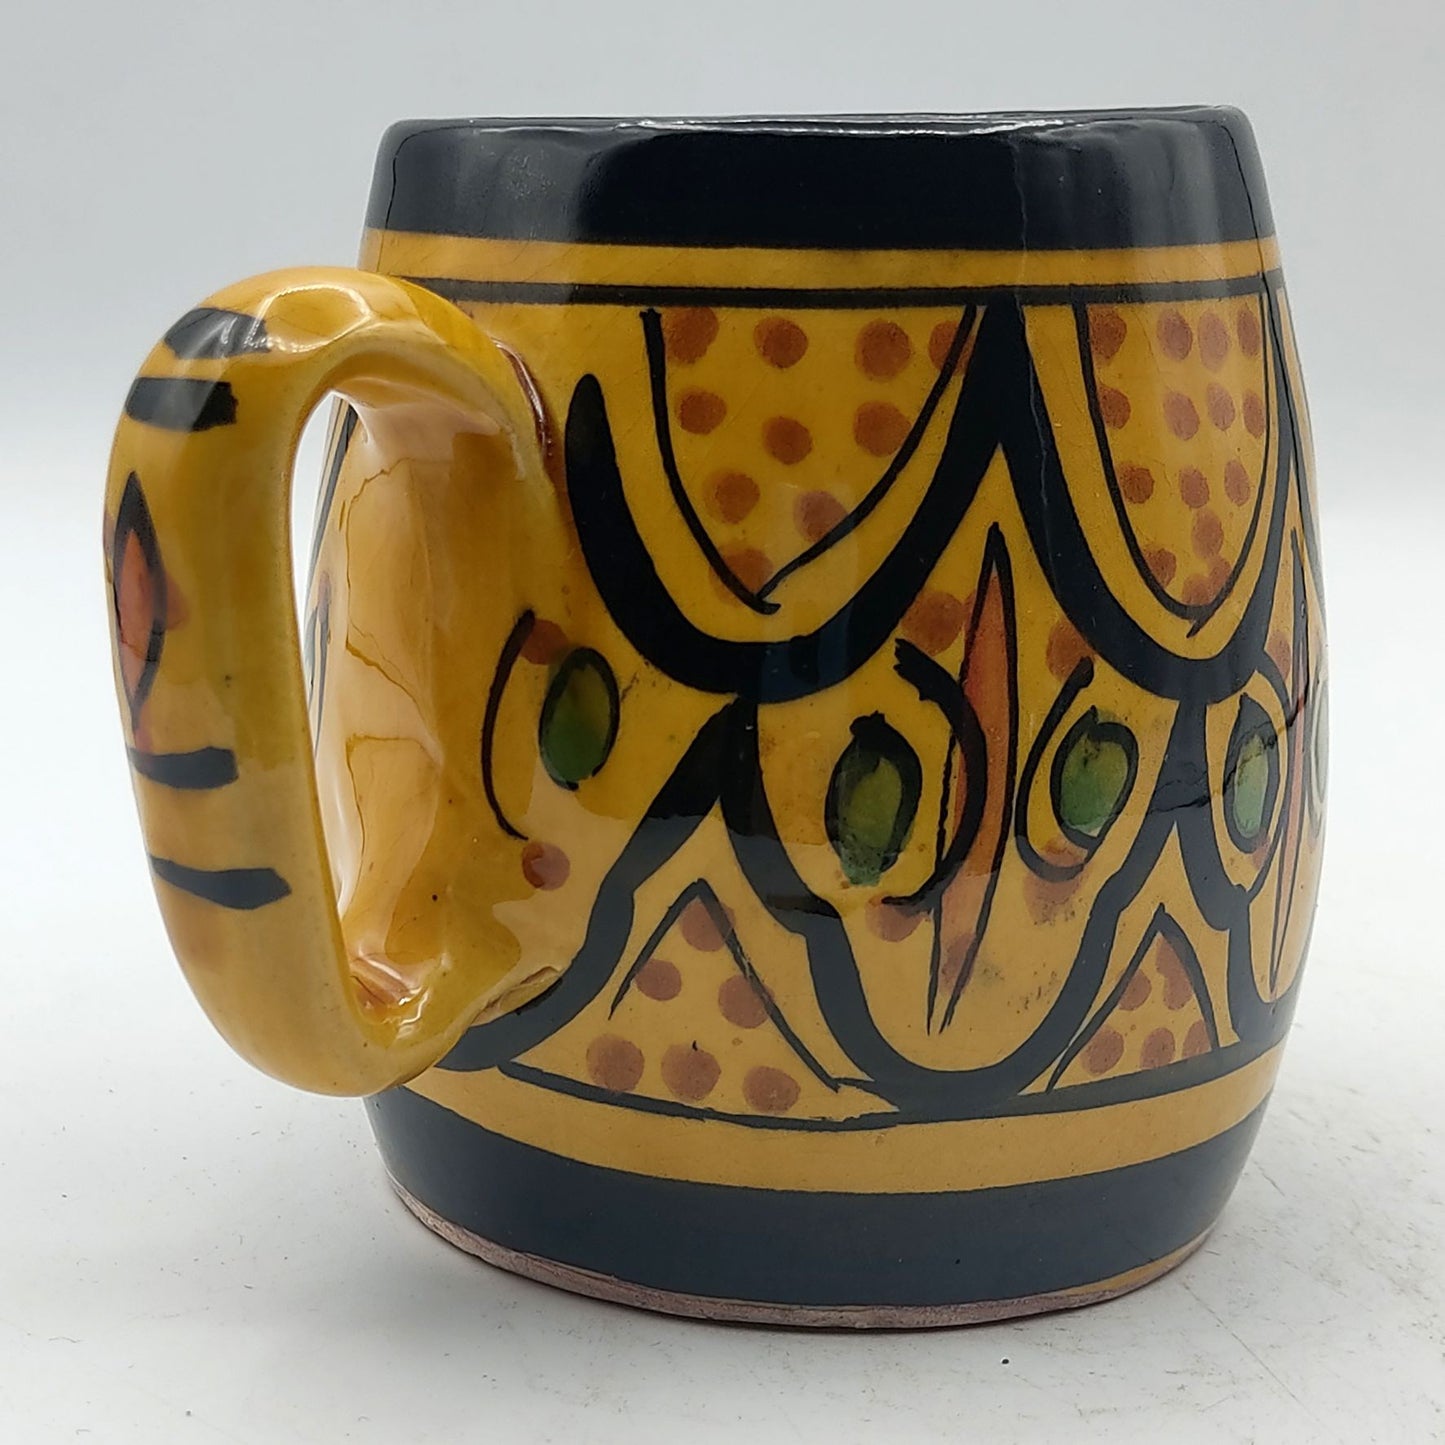 Arredamento Etnico Bicchiere Boccale Ceramica Terracotta Marocchino 0405211103